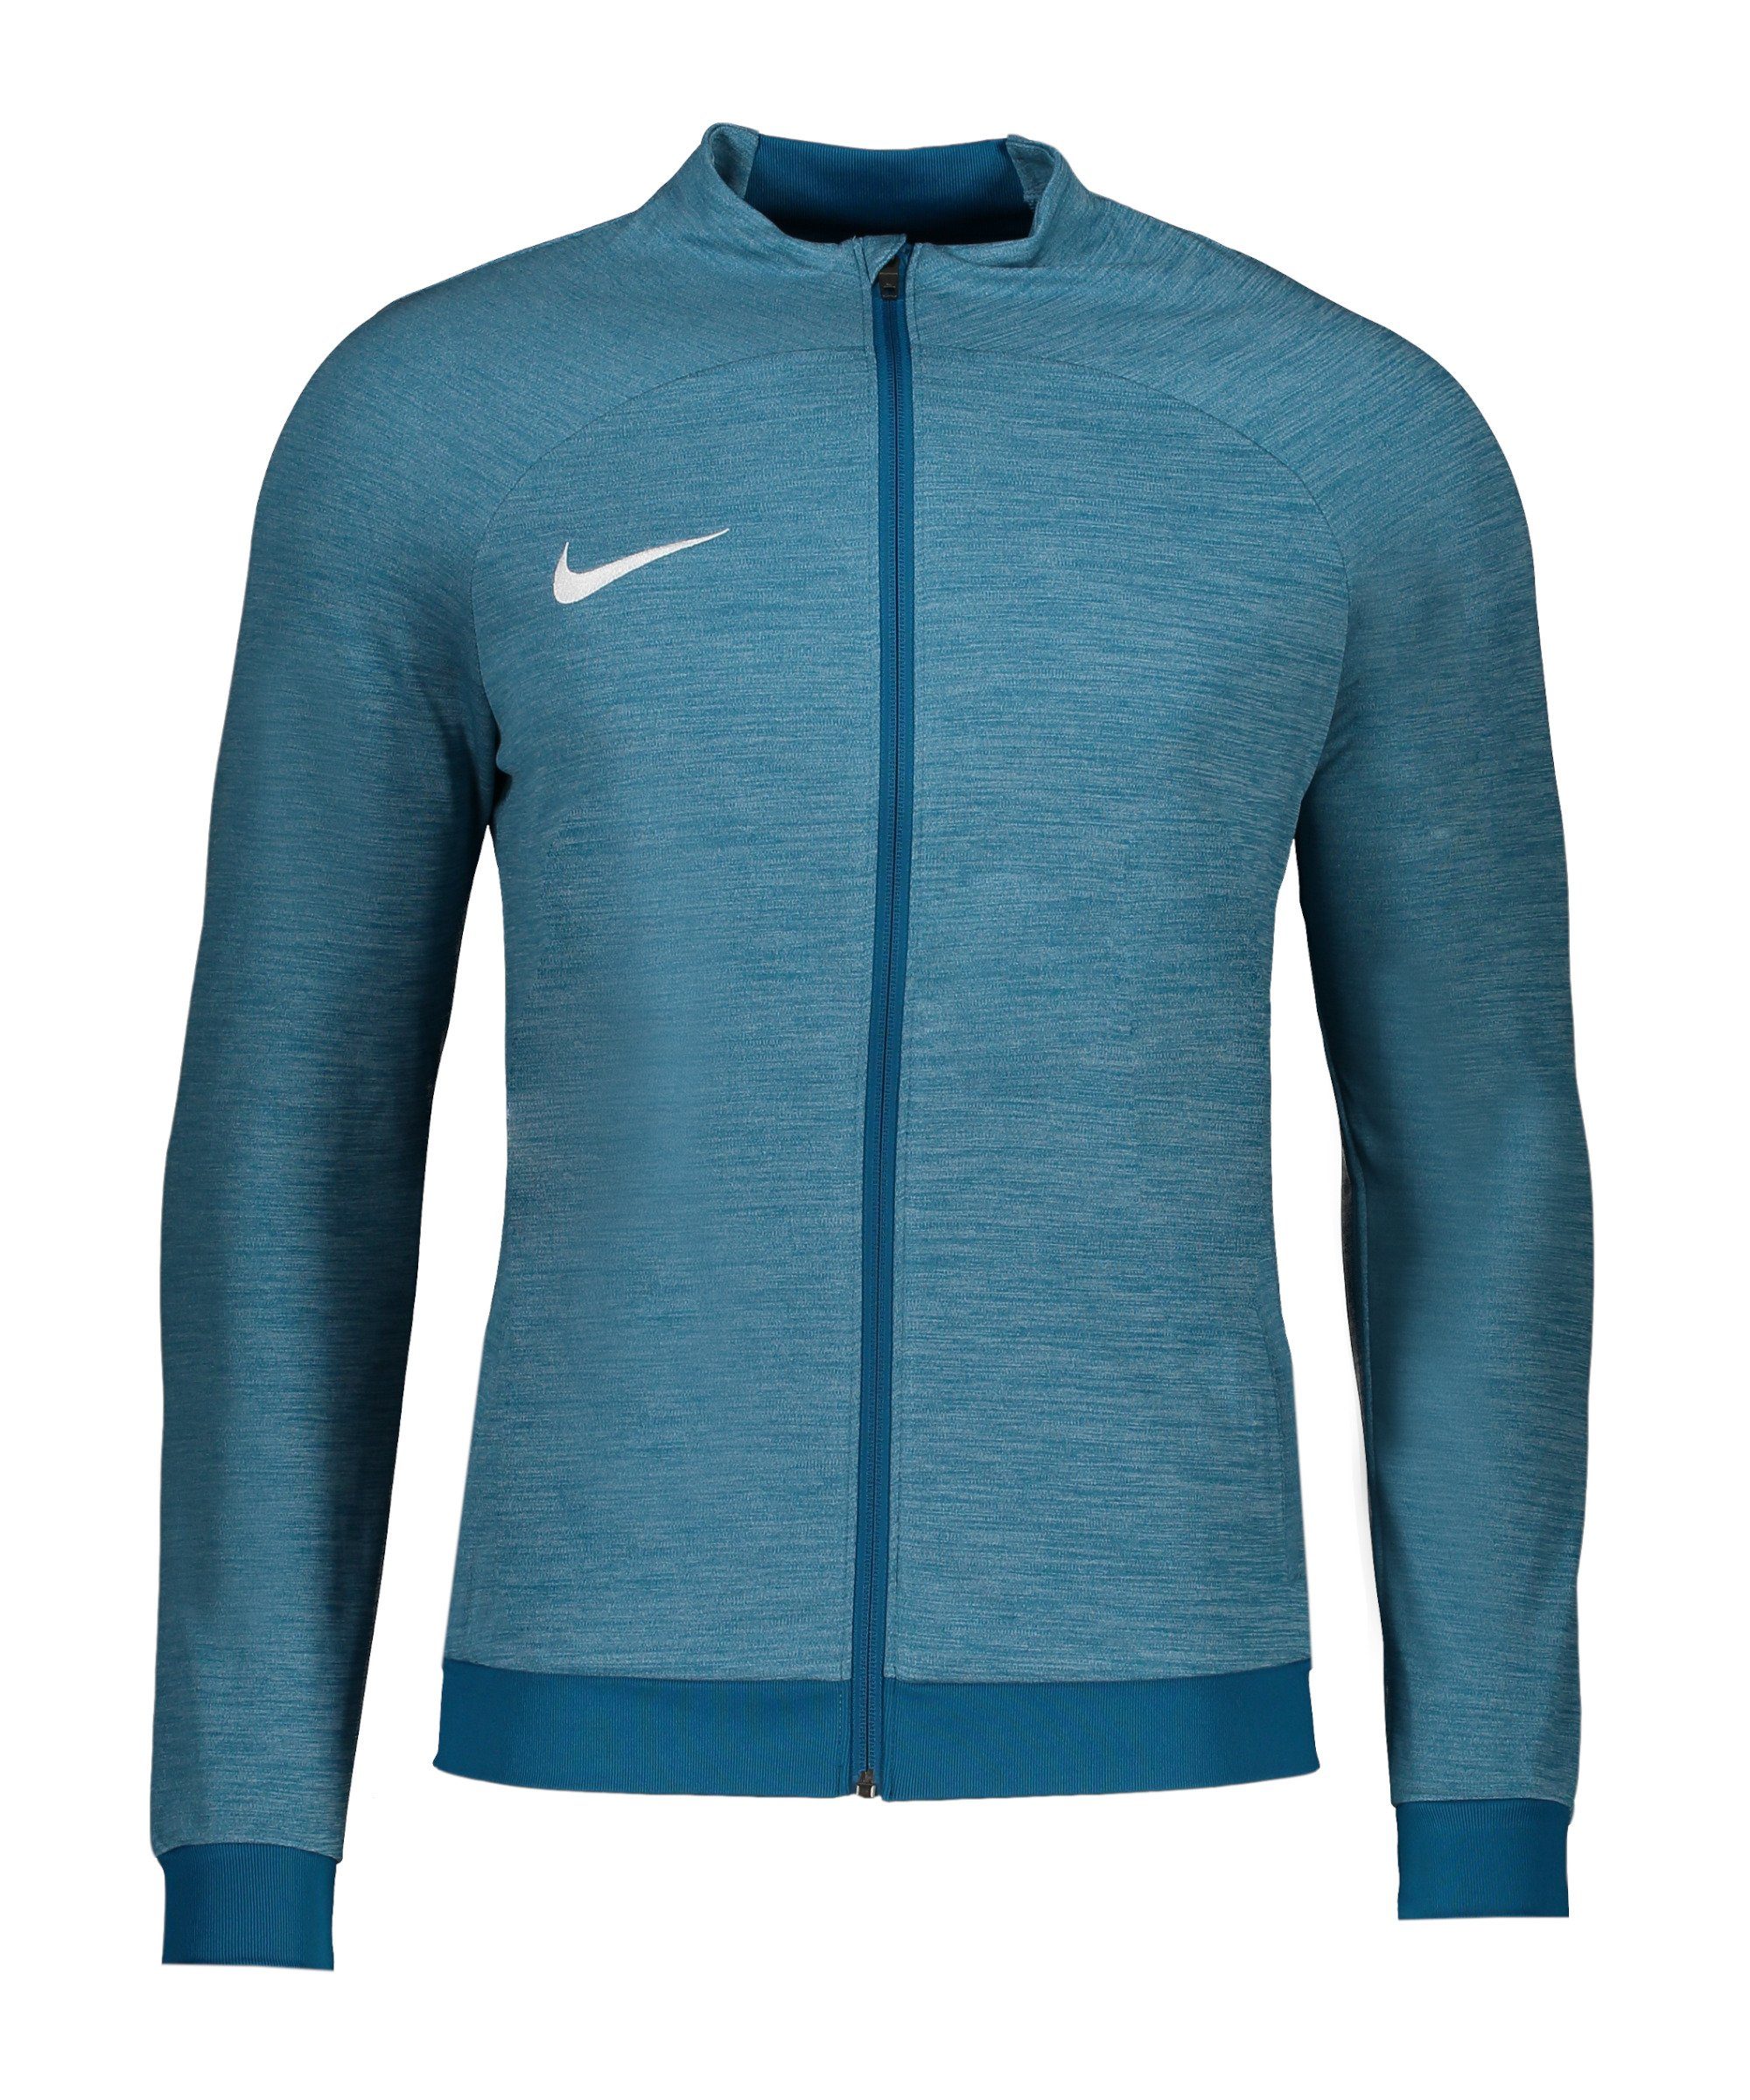 Nike Sweatjacke Academy Trainingsjacke blaublaublauweiss